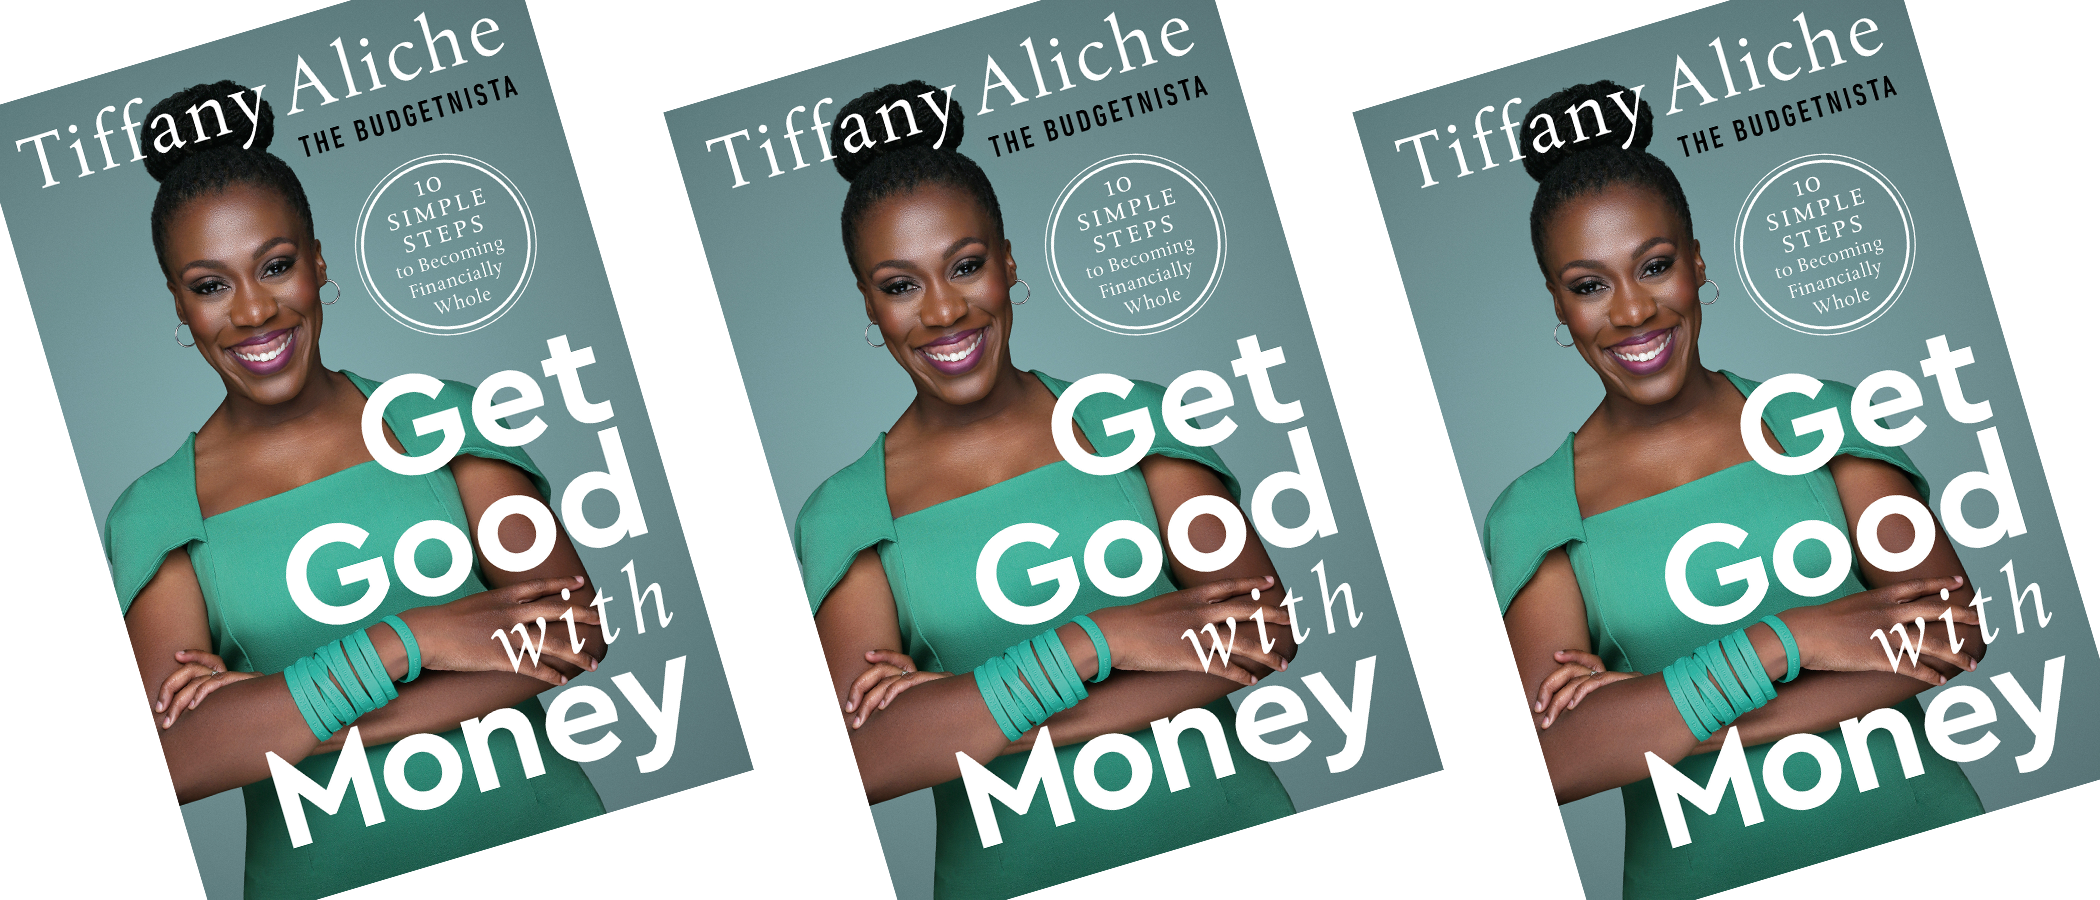 The Budgetnista's Tiffany Aliche On Finan... Edit AllBright